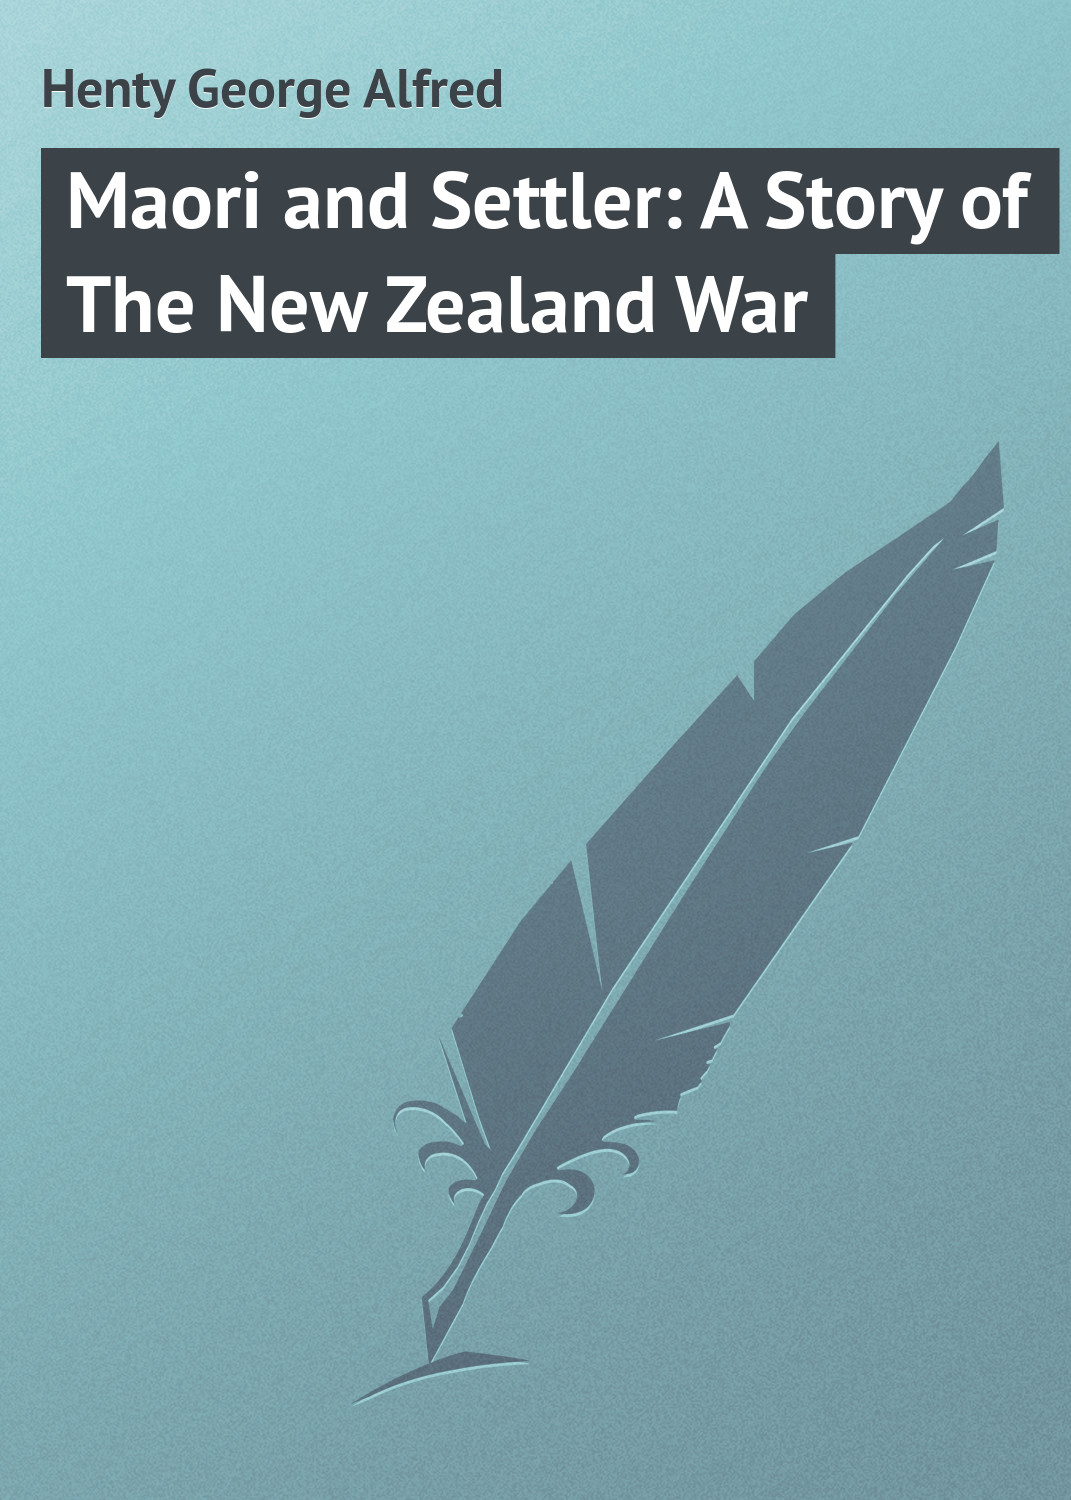 Книга Maori and Settler: A Story of The New Zealand War из серии , созданная George Henty, может относится к жанру Зарубежная классика, Зарубежные детские книги. Стоимость электронной книги Maori and Settler: A Story of The New Zealand War с идентификатором 23146747 составляет 5.99 руб.